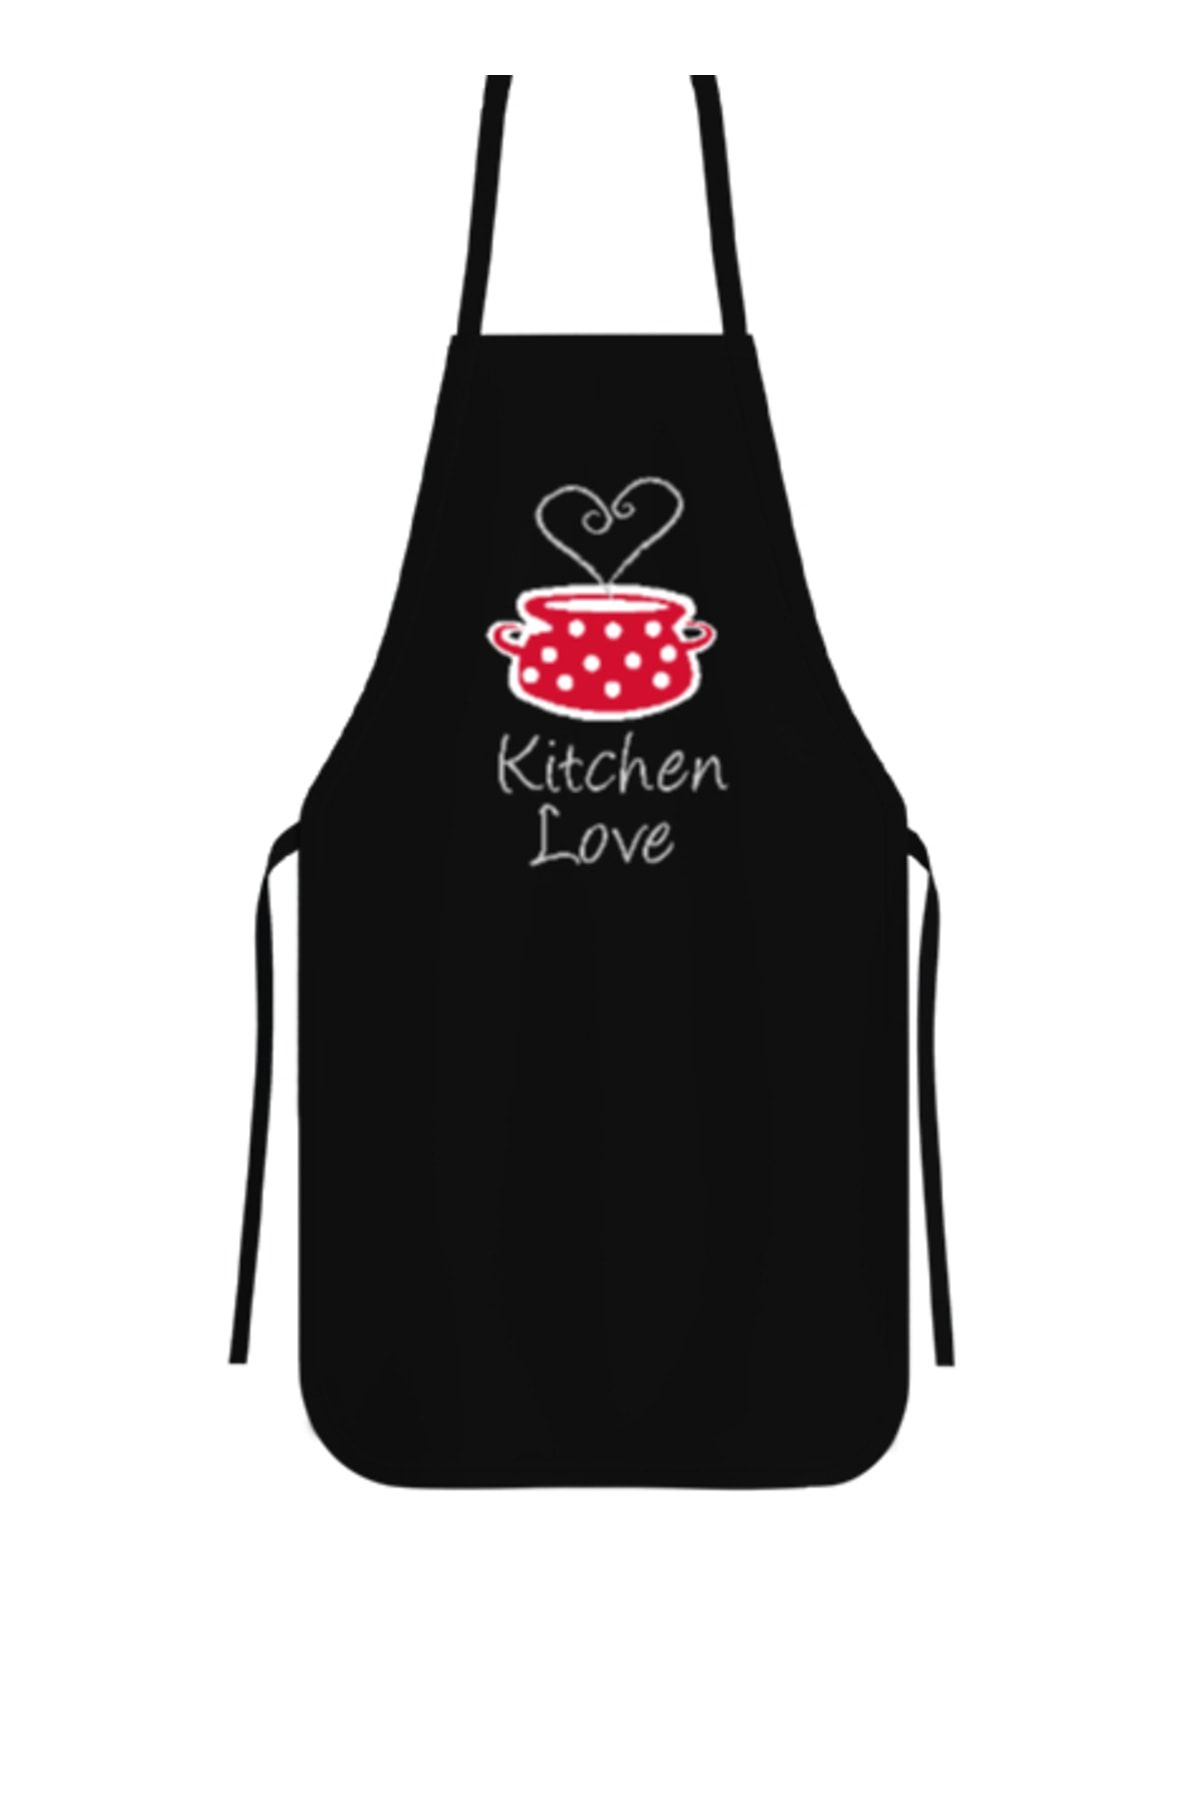 Tisho Kitchen Love - Mutfak Aşkı Siyah Mutfak Önlüğü